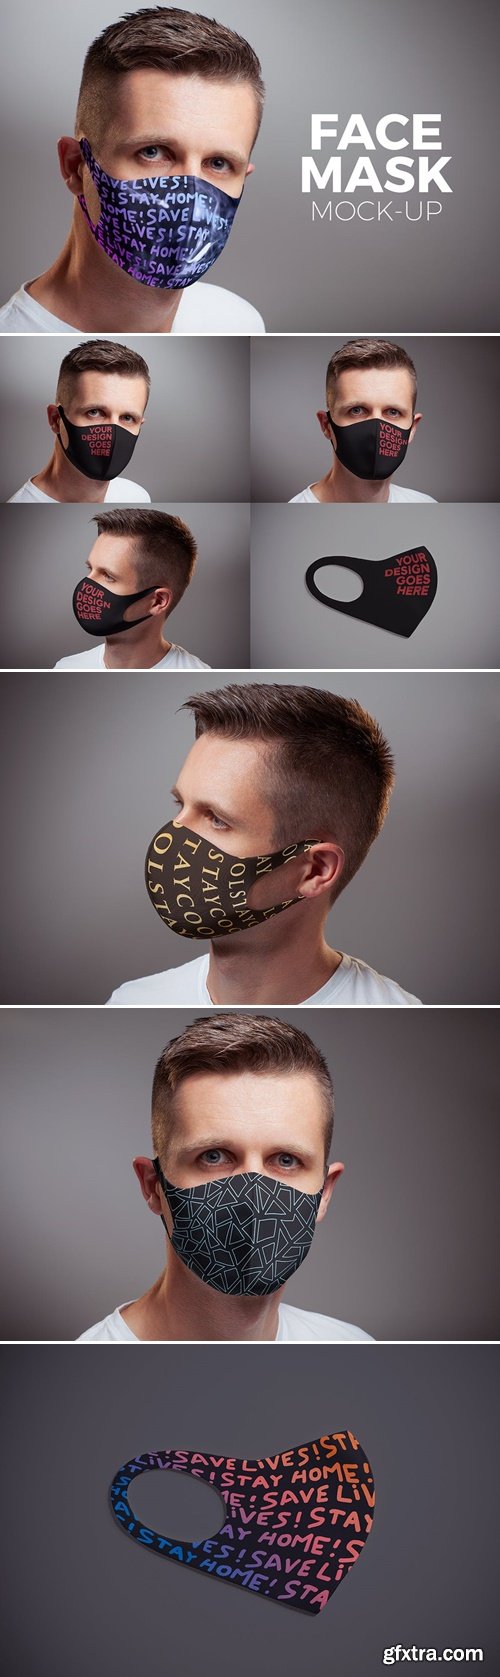 Face Mask Mock-up RKGNEC8